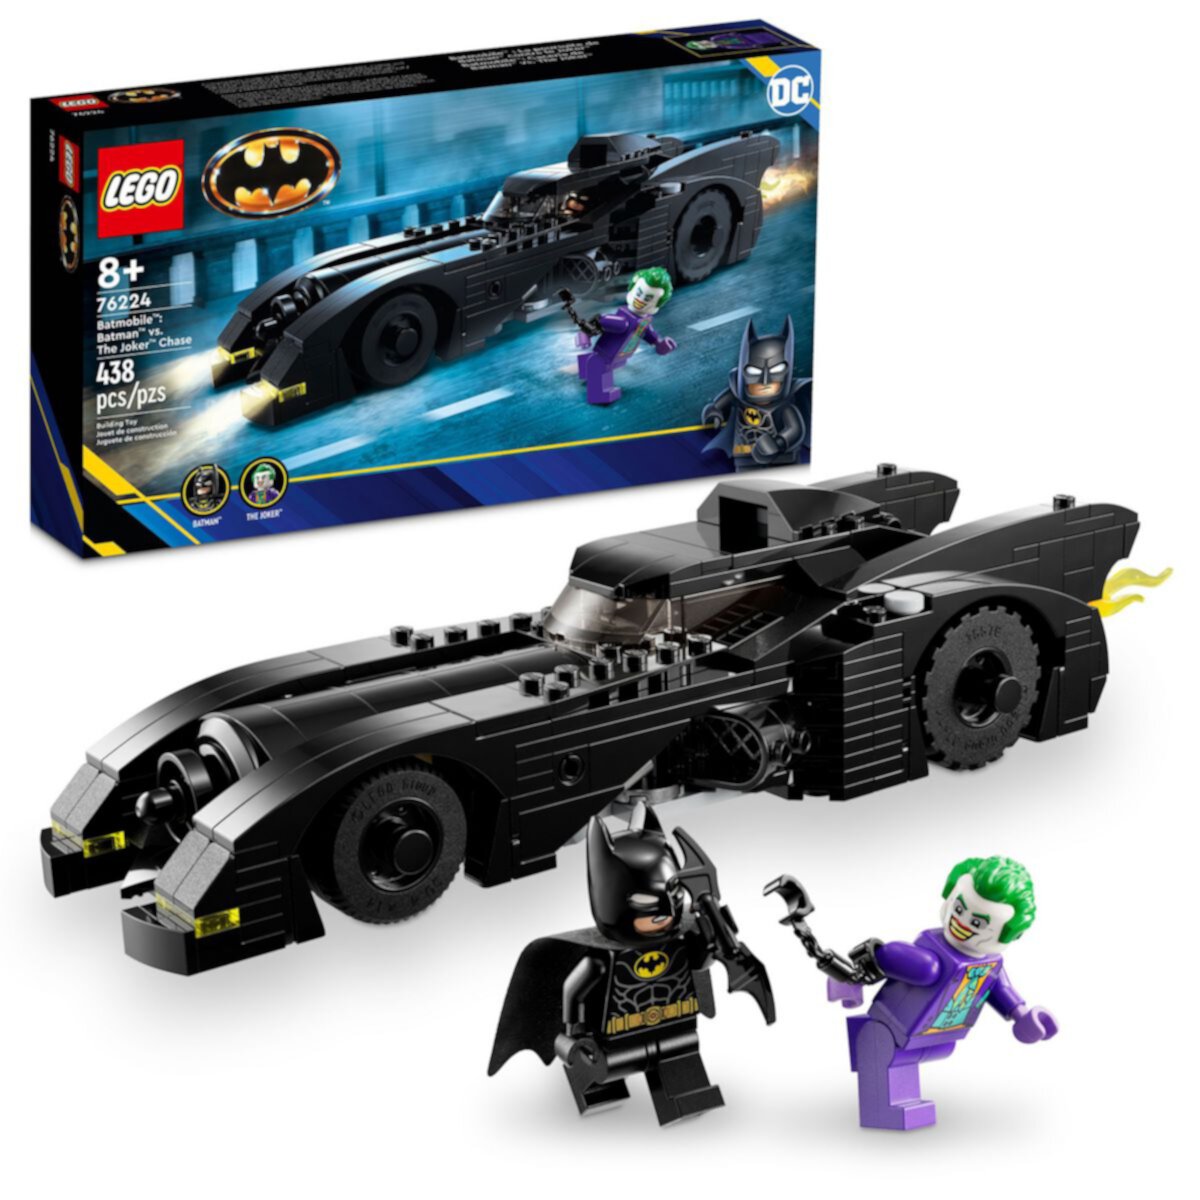 LEGO DC Бэтмобиль: Бэтмен против Джокера 76224 (438 деталей) Lego